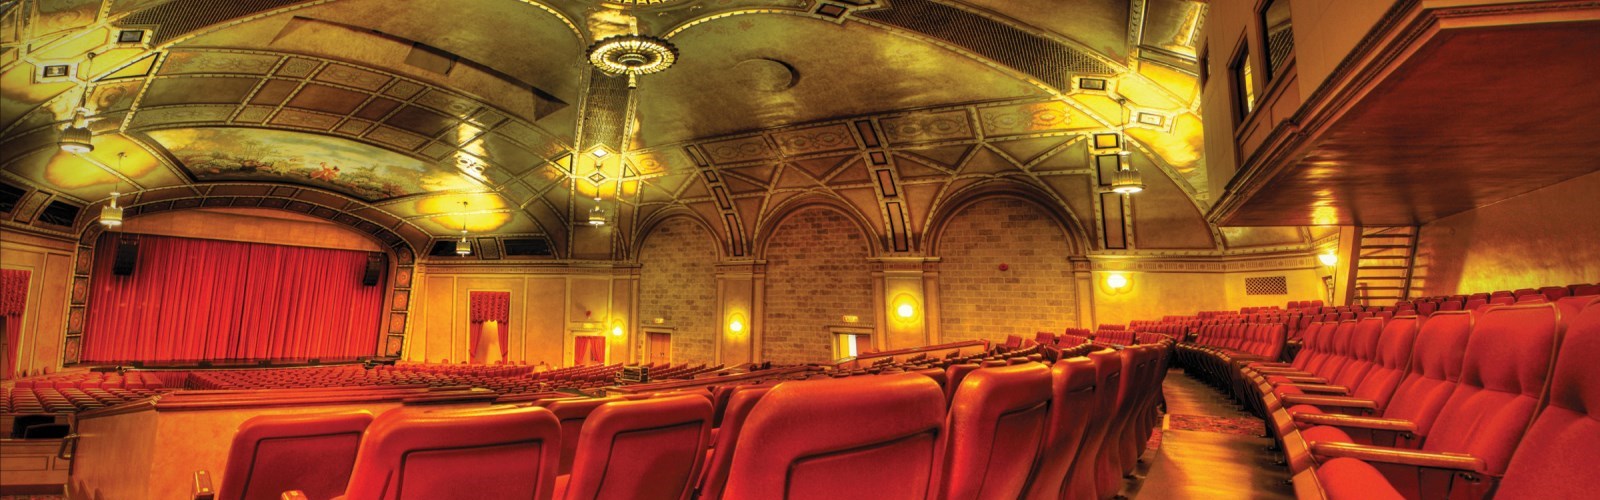 Sanderson Theatre Seats